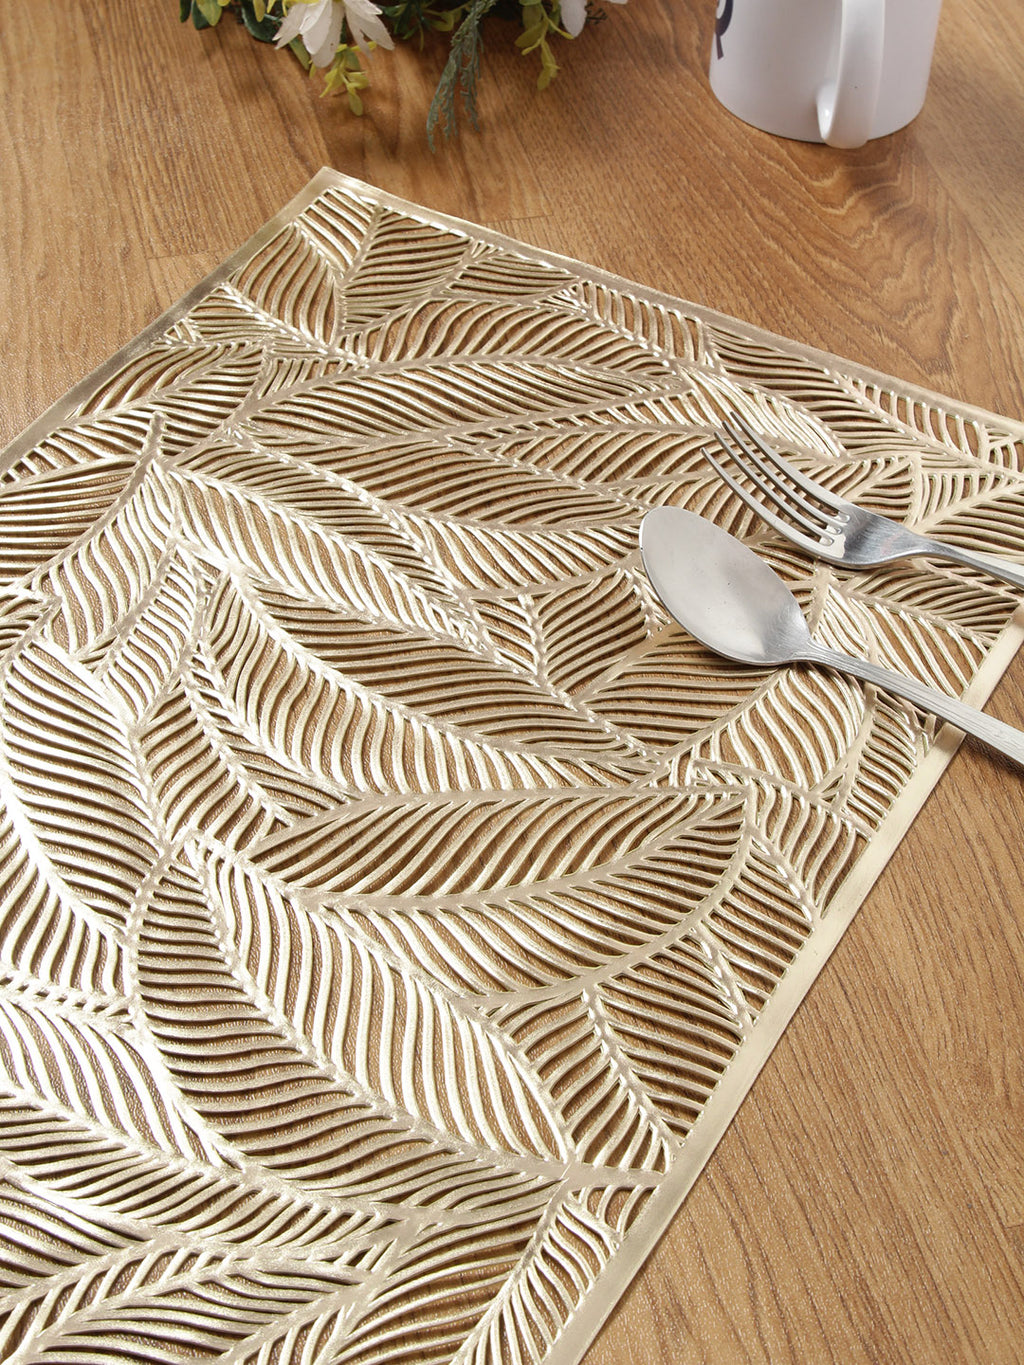 Detec™ Hosta Modern Leaf Design Leatherite Rectangular Table Place Mats in Gold Color